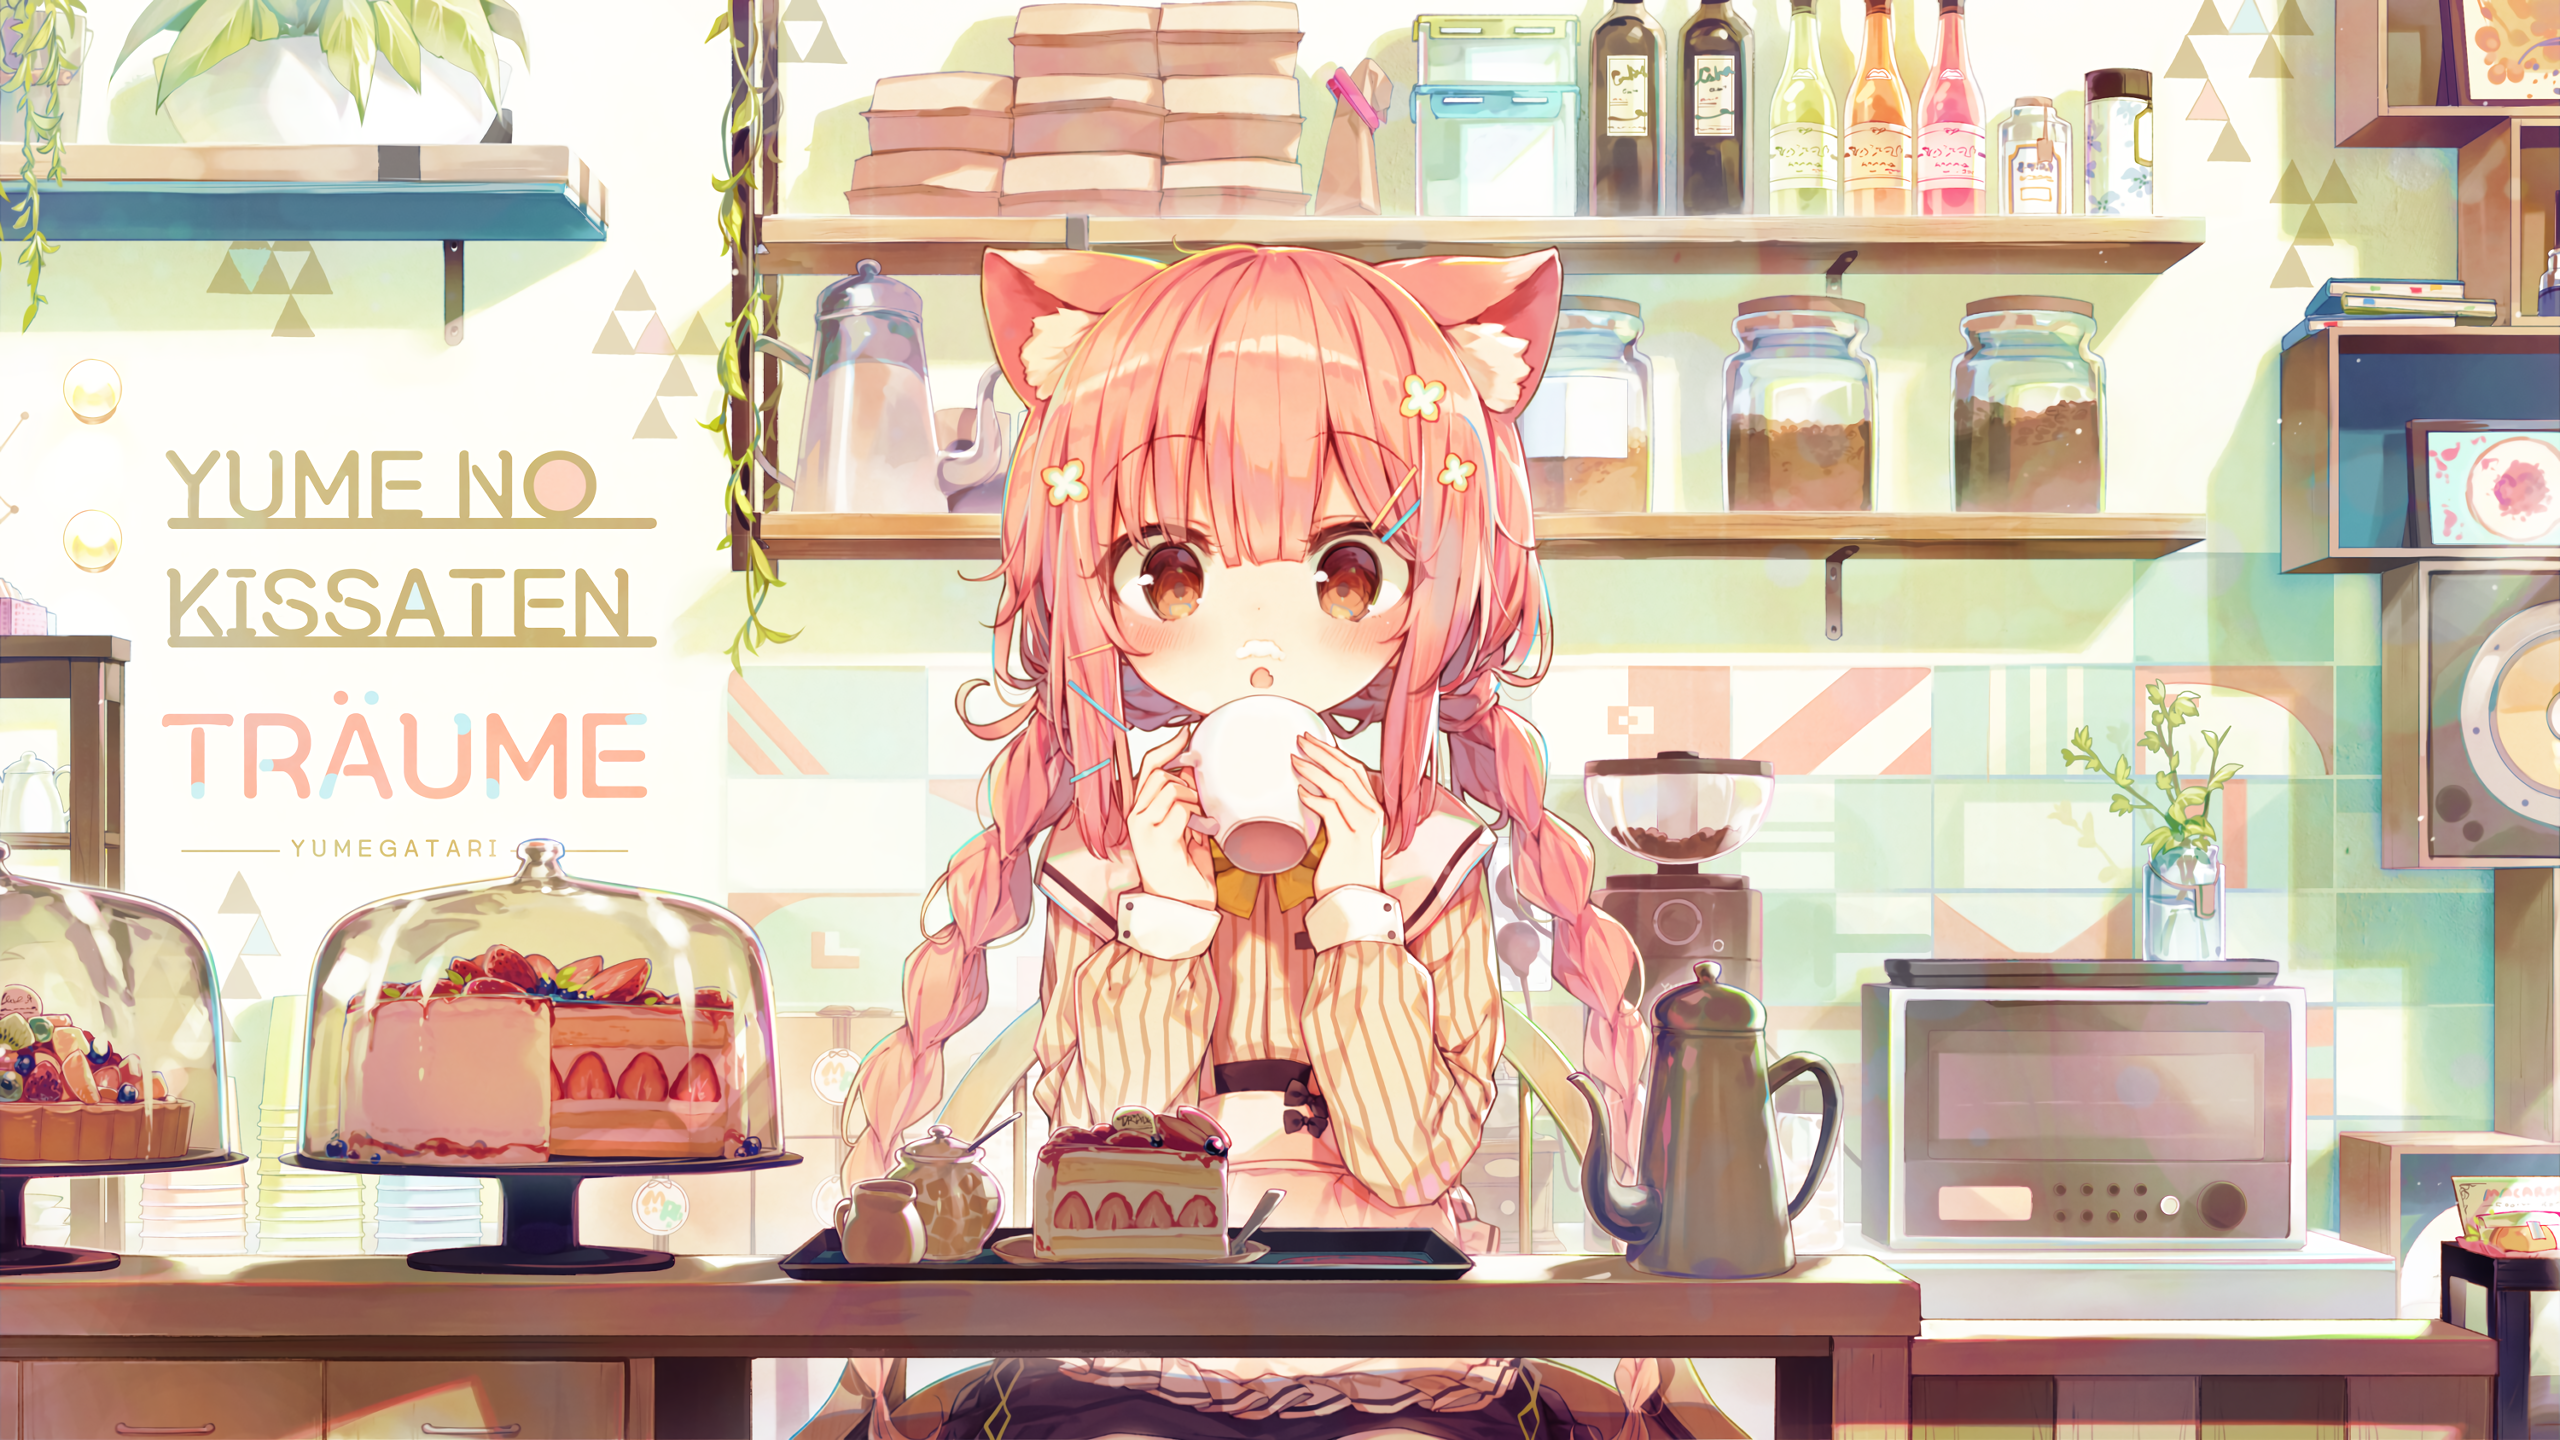 Dream Coffee Shop (Original) (2560x1440 .reddit.com